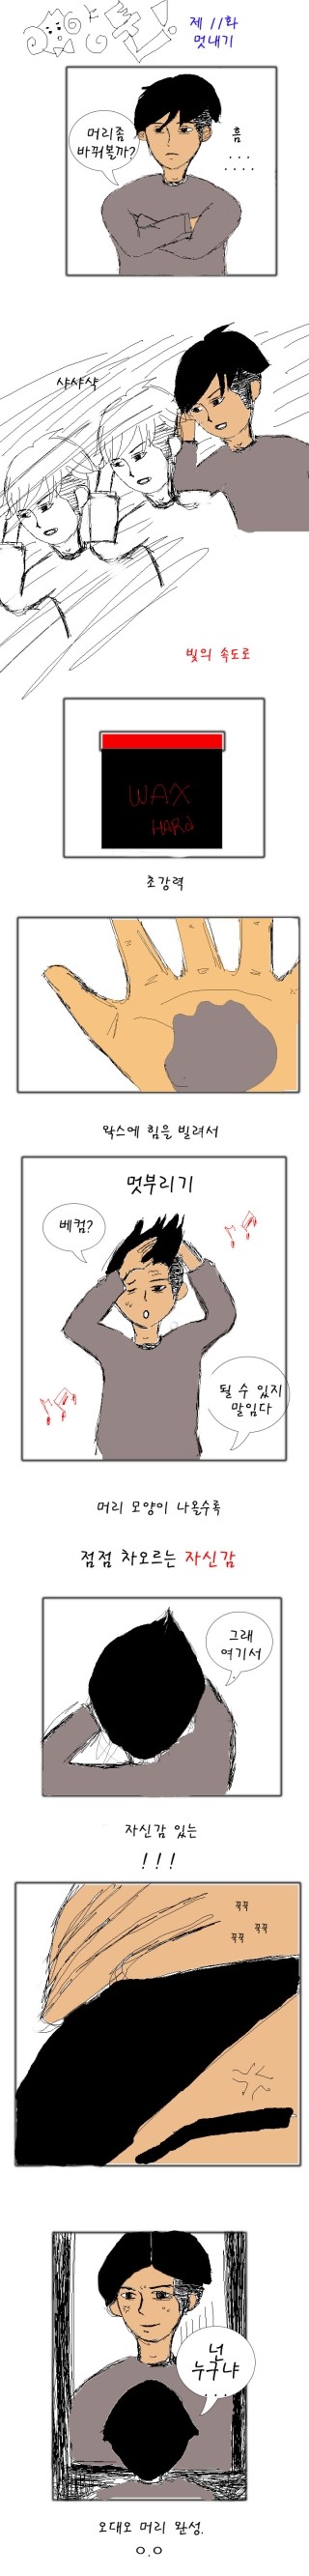 양툰&웹툰)) 제11화 - 멋부리기